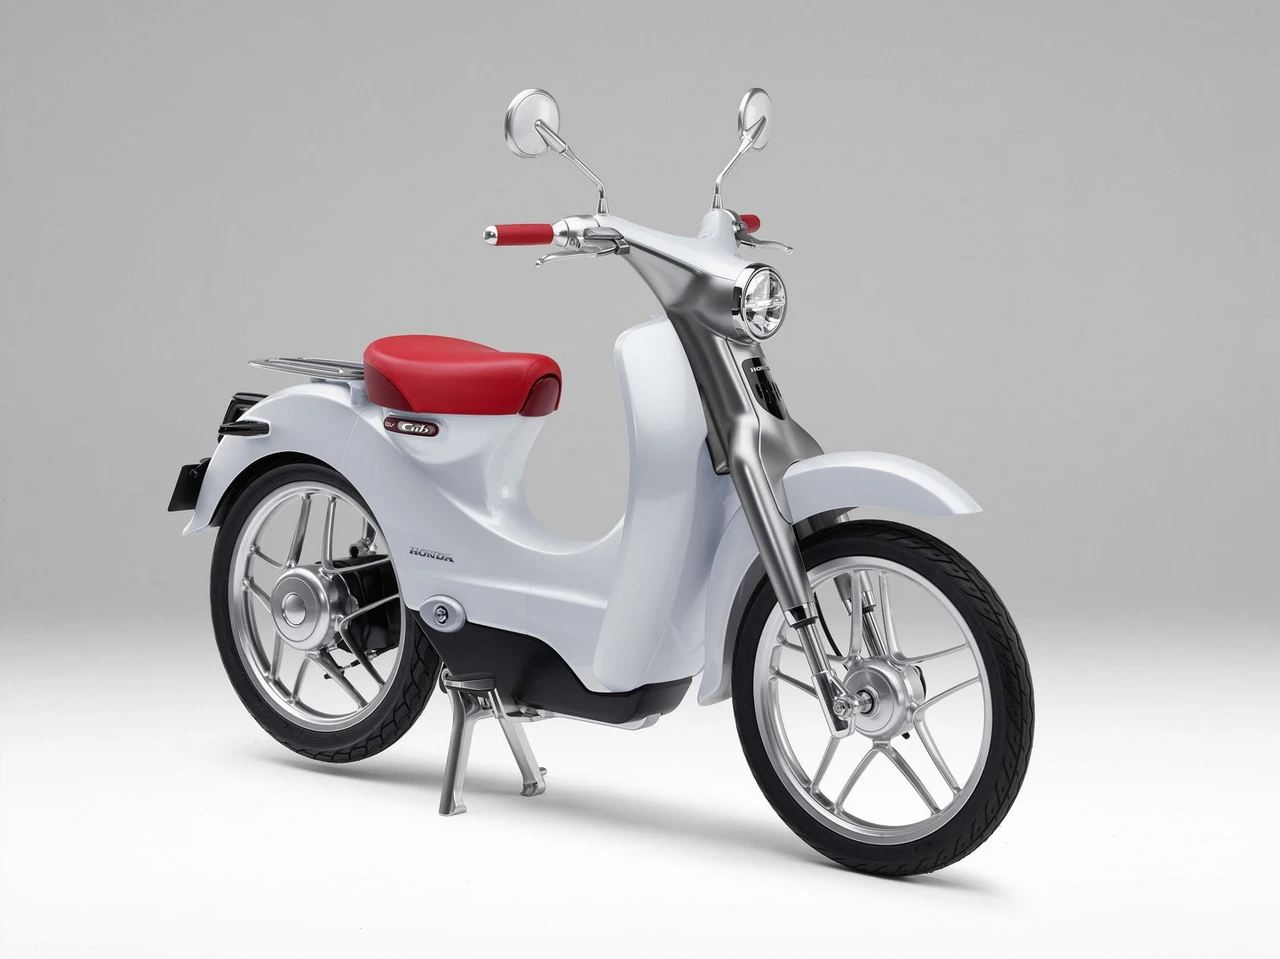 Xe máy điện Honda VGO sắp được nhập về Việt Nam giá khoảng 30 triệu đồng